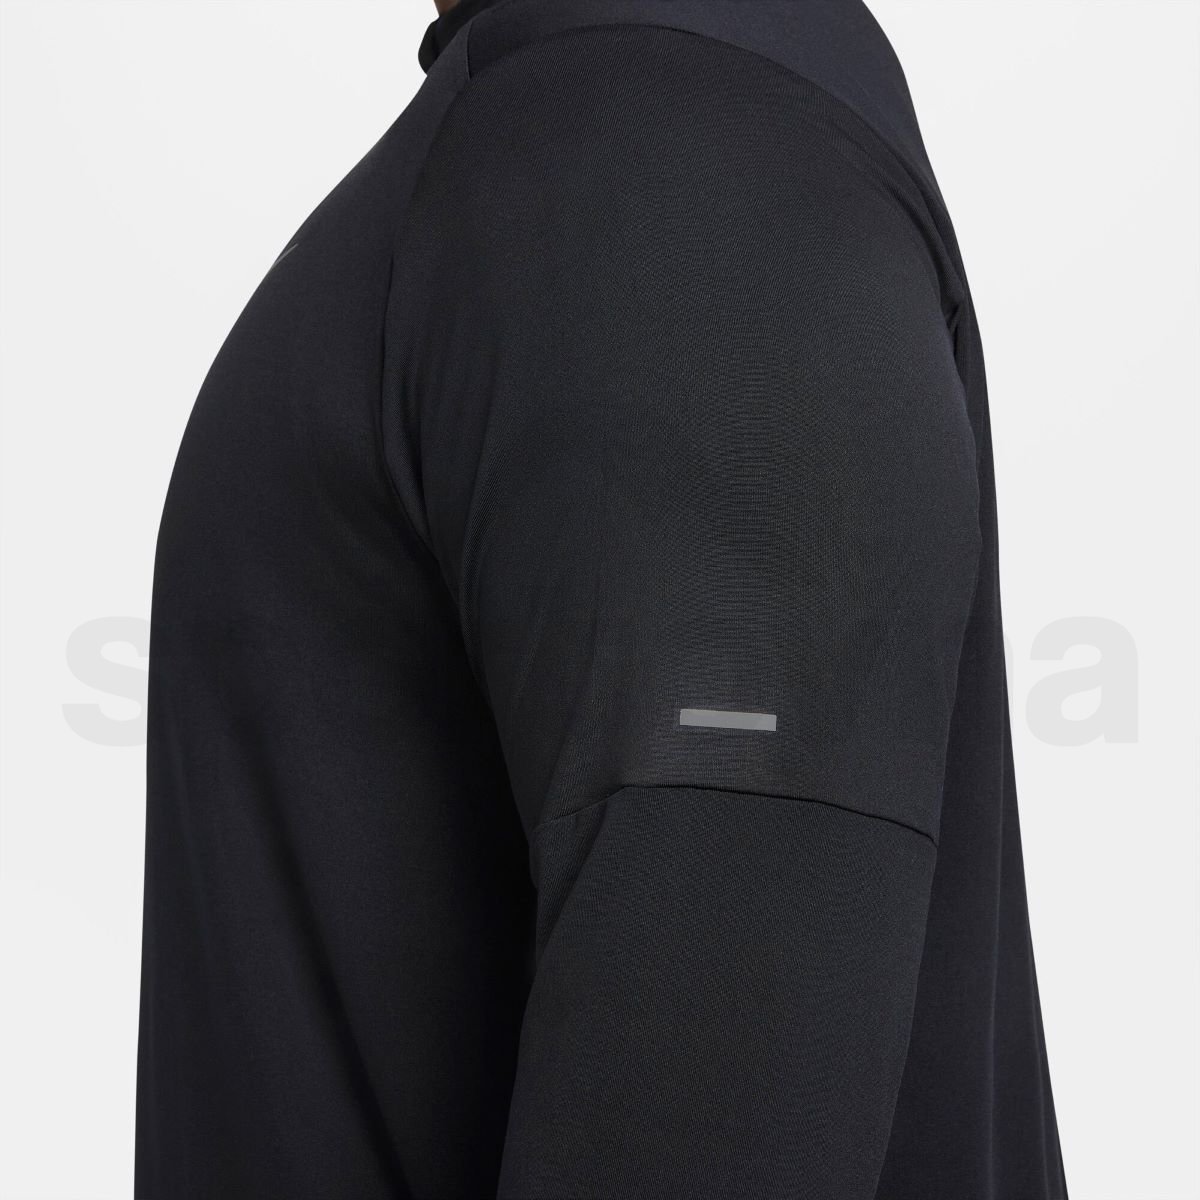 Tričko Nike Dri-FIT Element Top M - černé